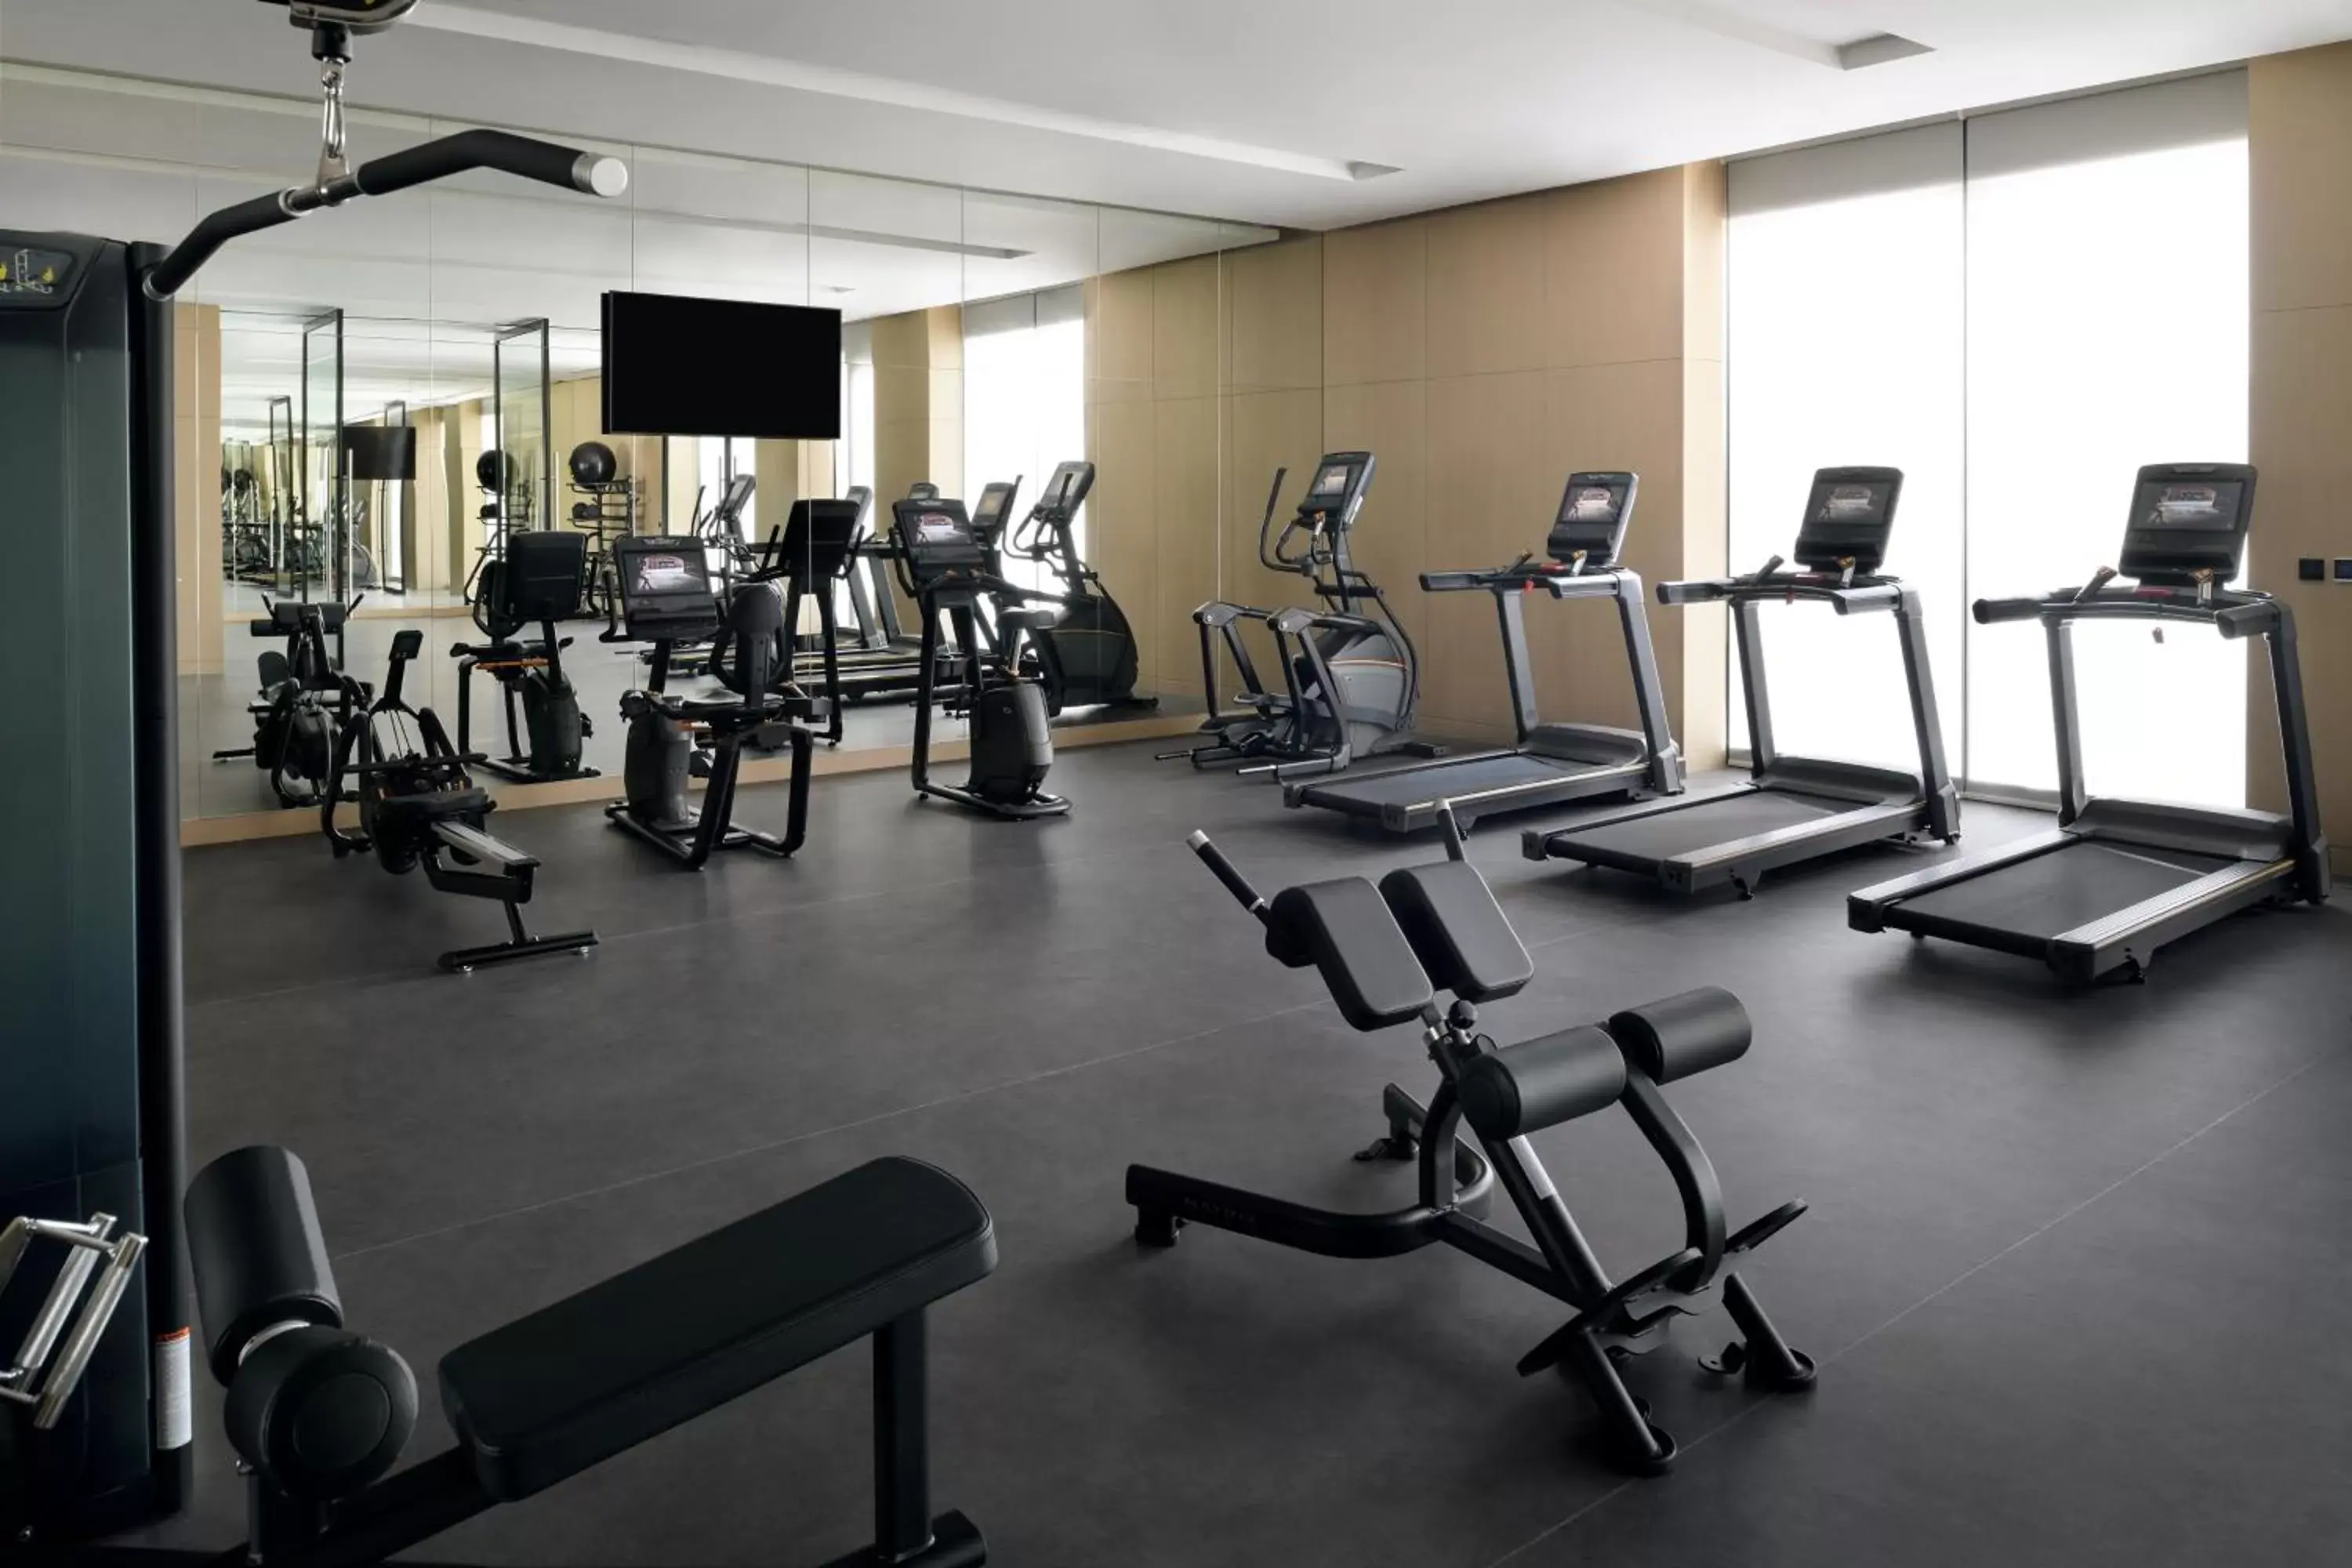 Fitness centre/facilities, Fitness Center/Facilities in Mövenpick Resort Al Marjan Island